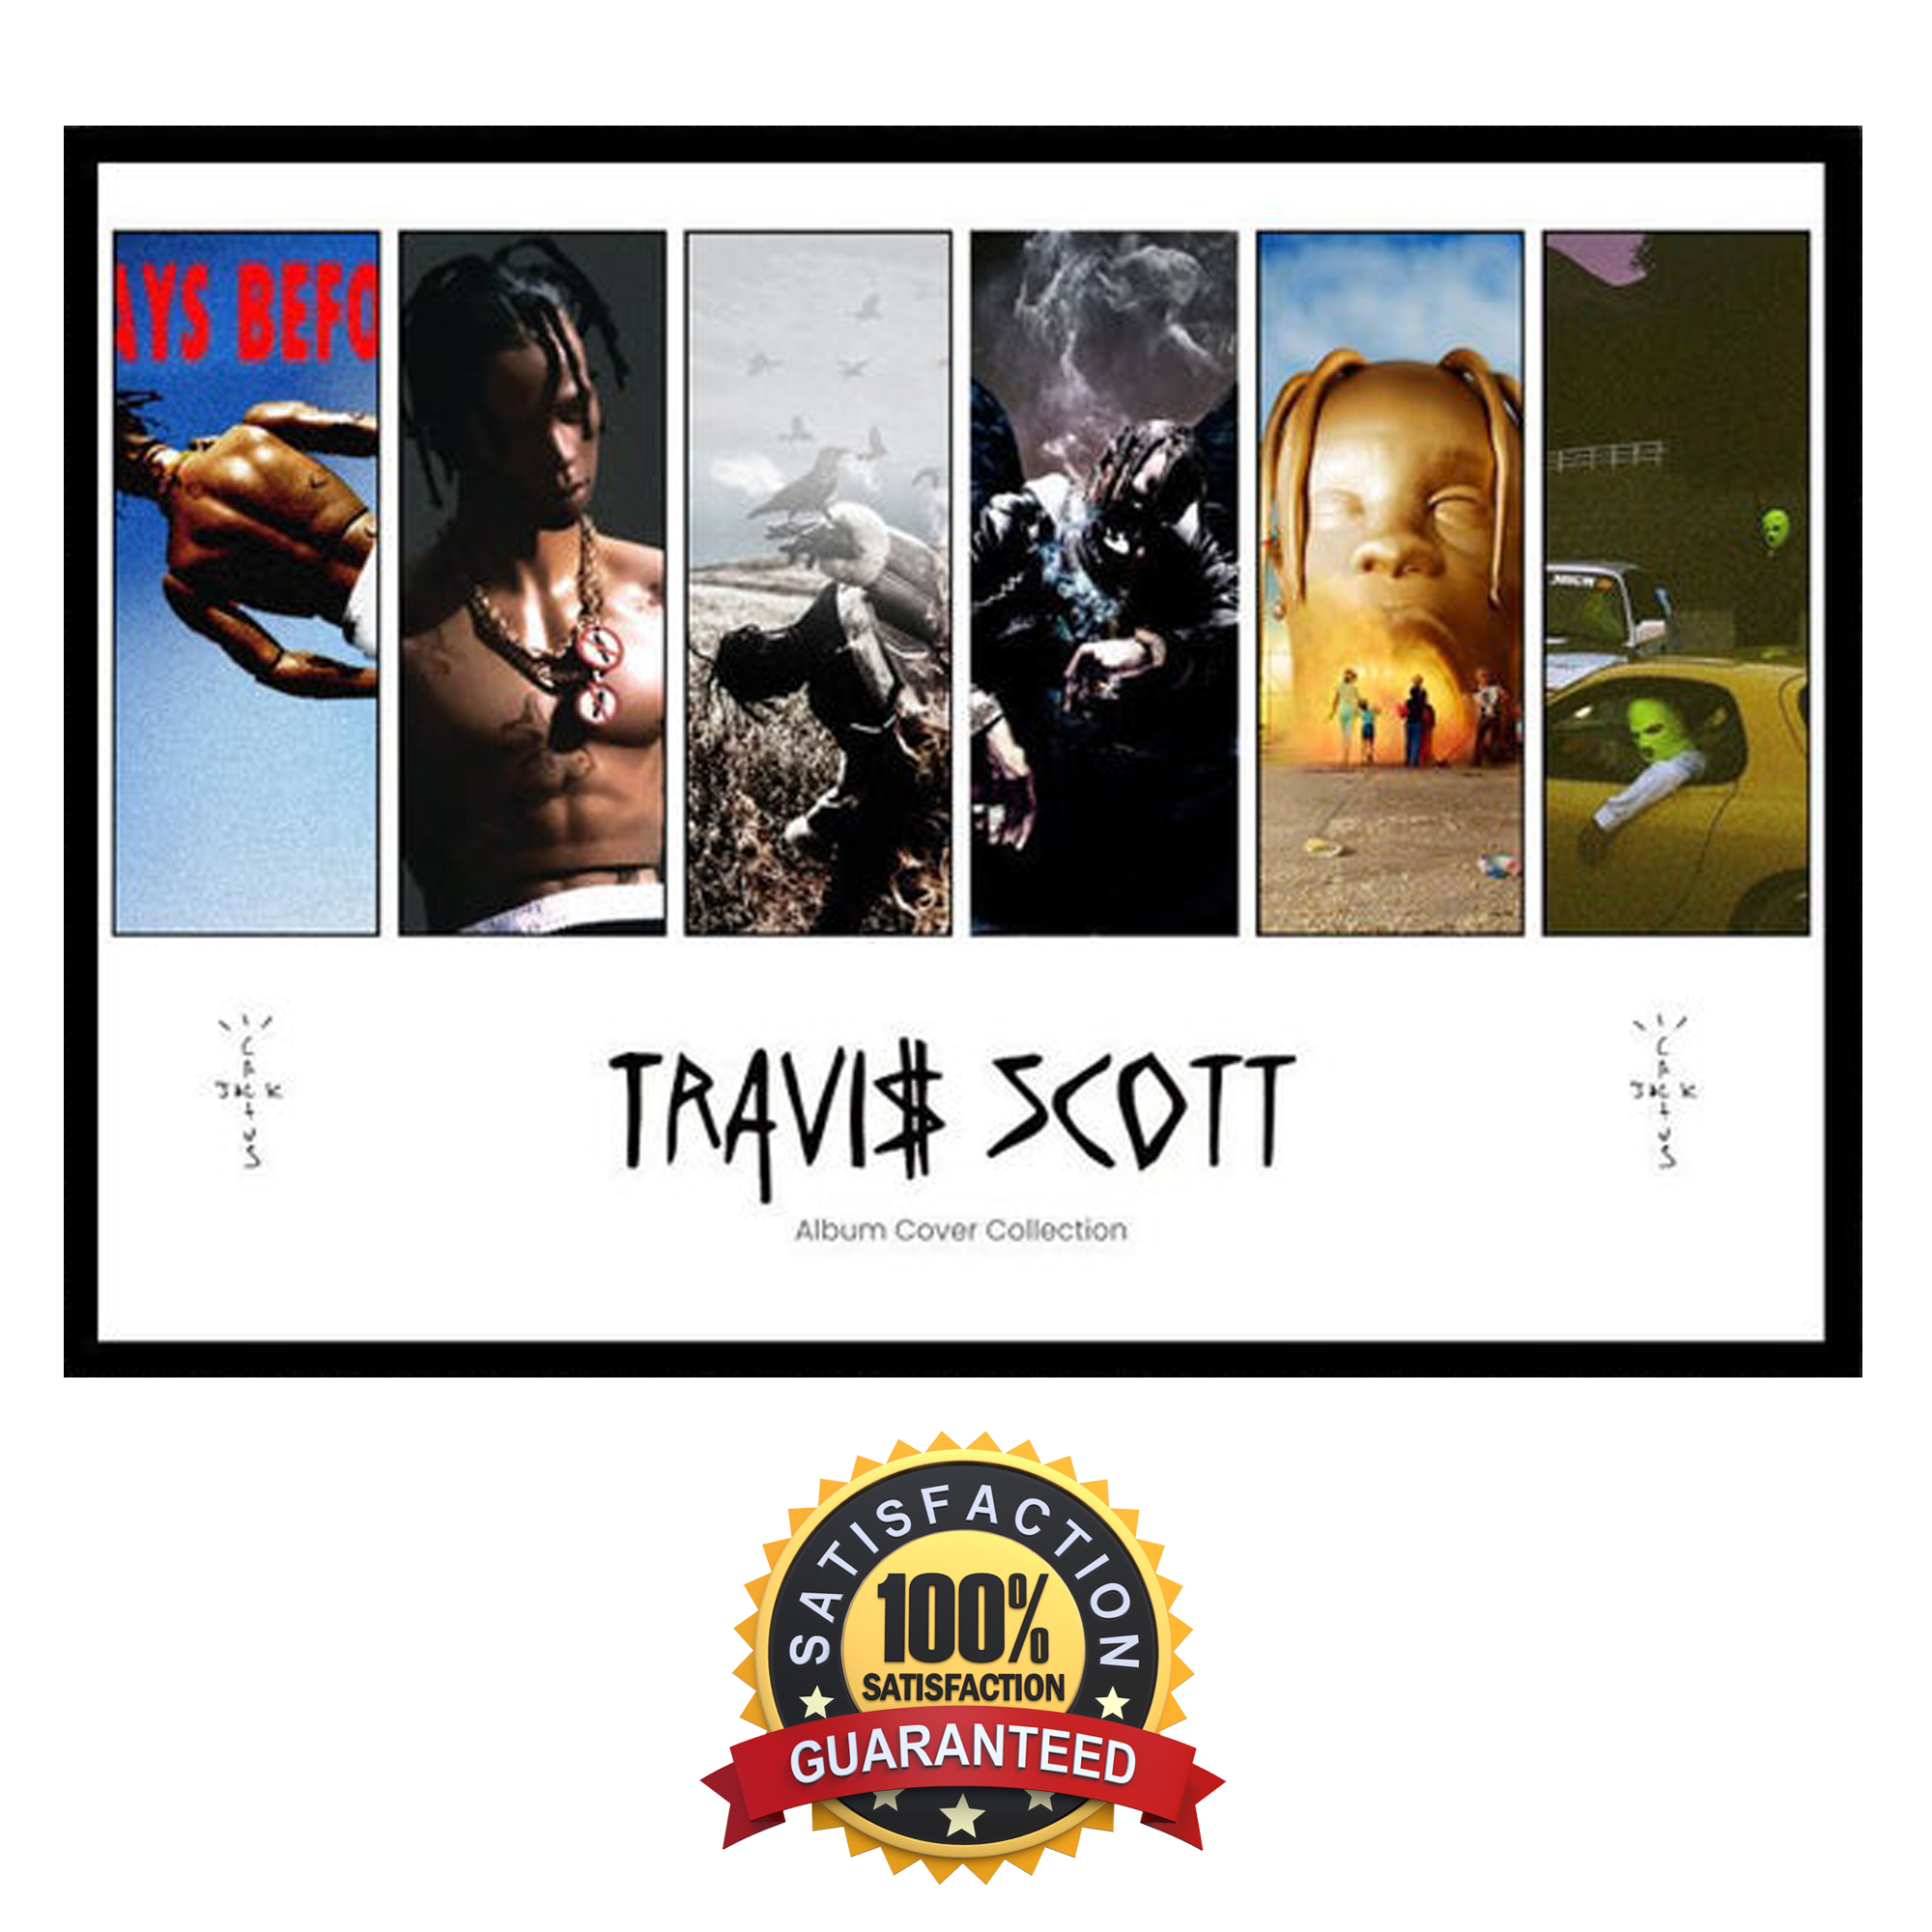 TRAVIS SCOTT Album Cover Poster – Professional Print in HD Cactus